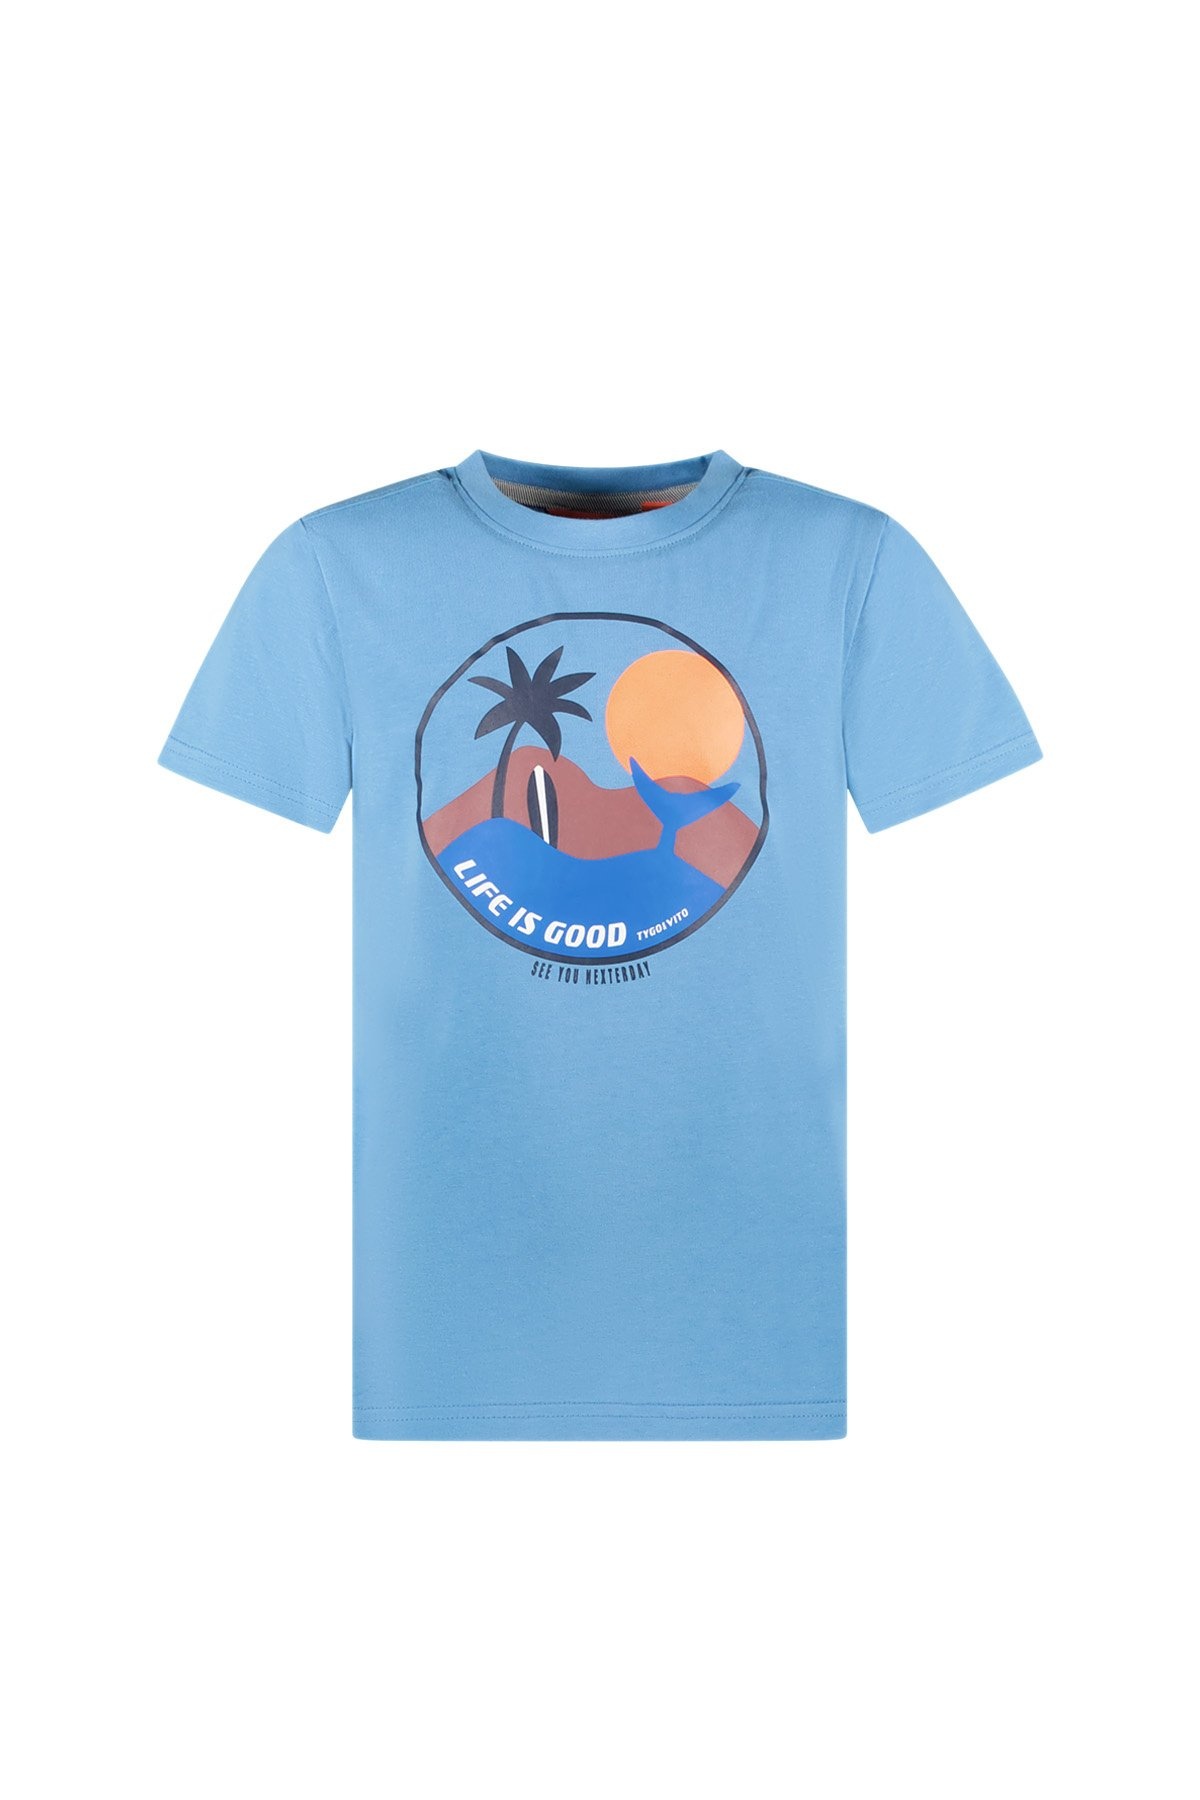 TYGO & vito X403-6423 Jongens T-shirt - Bright Blue - Maat 110-116